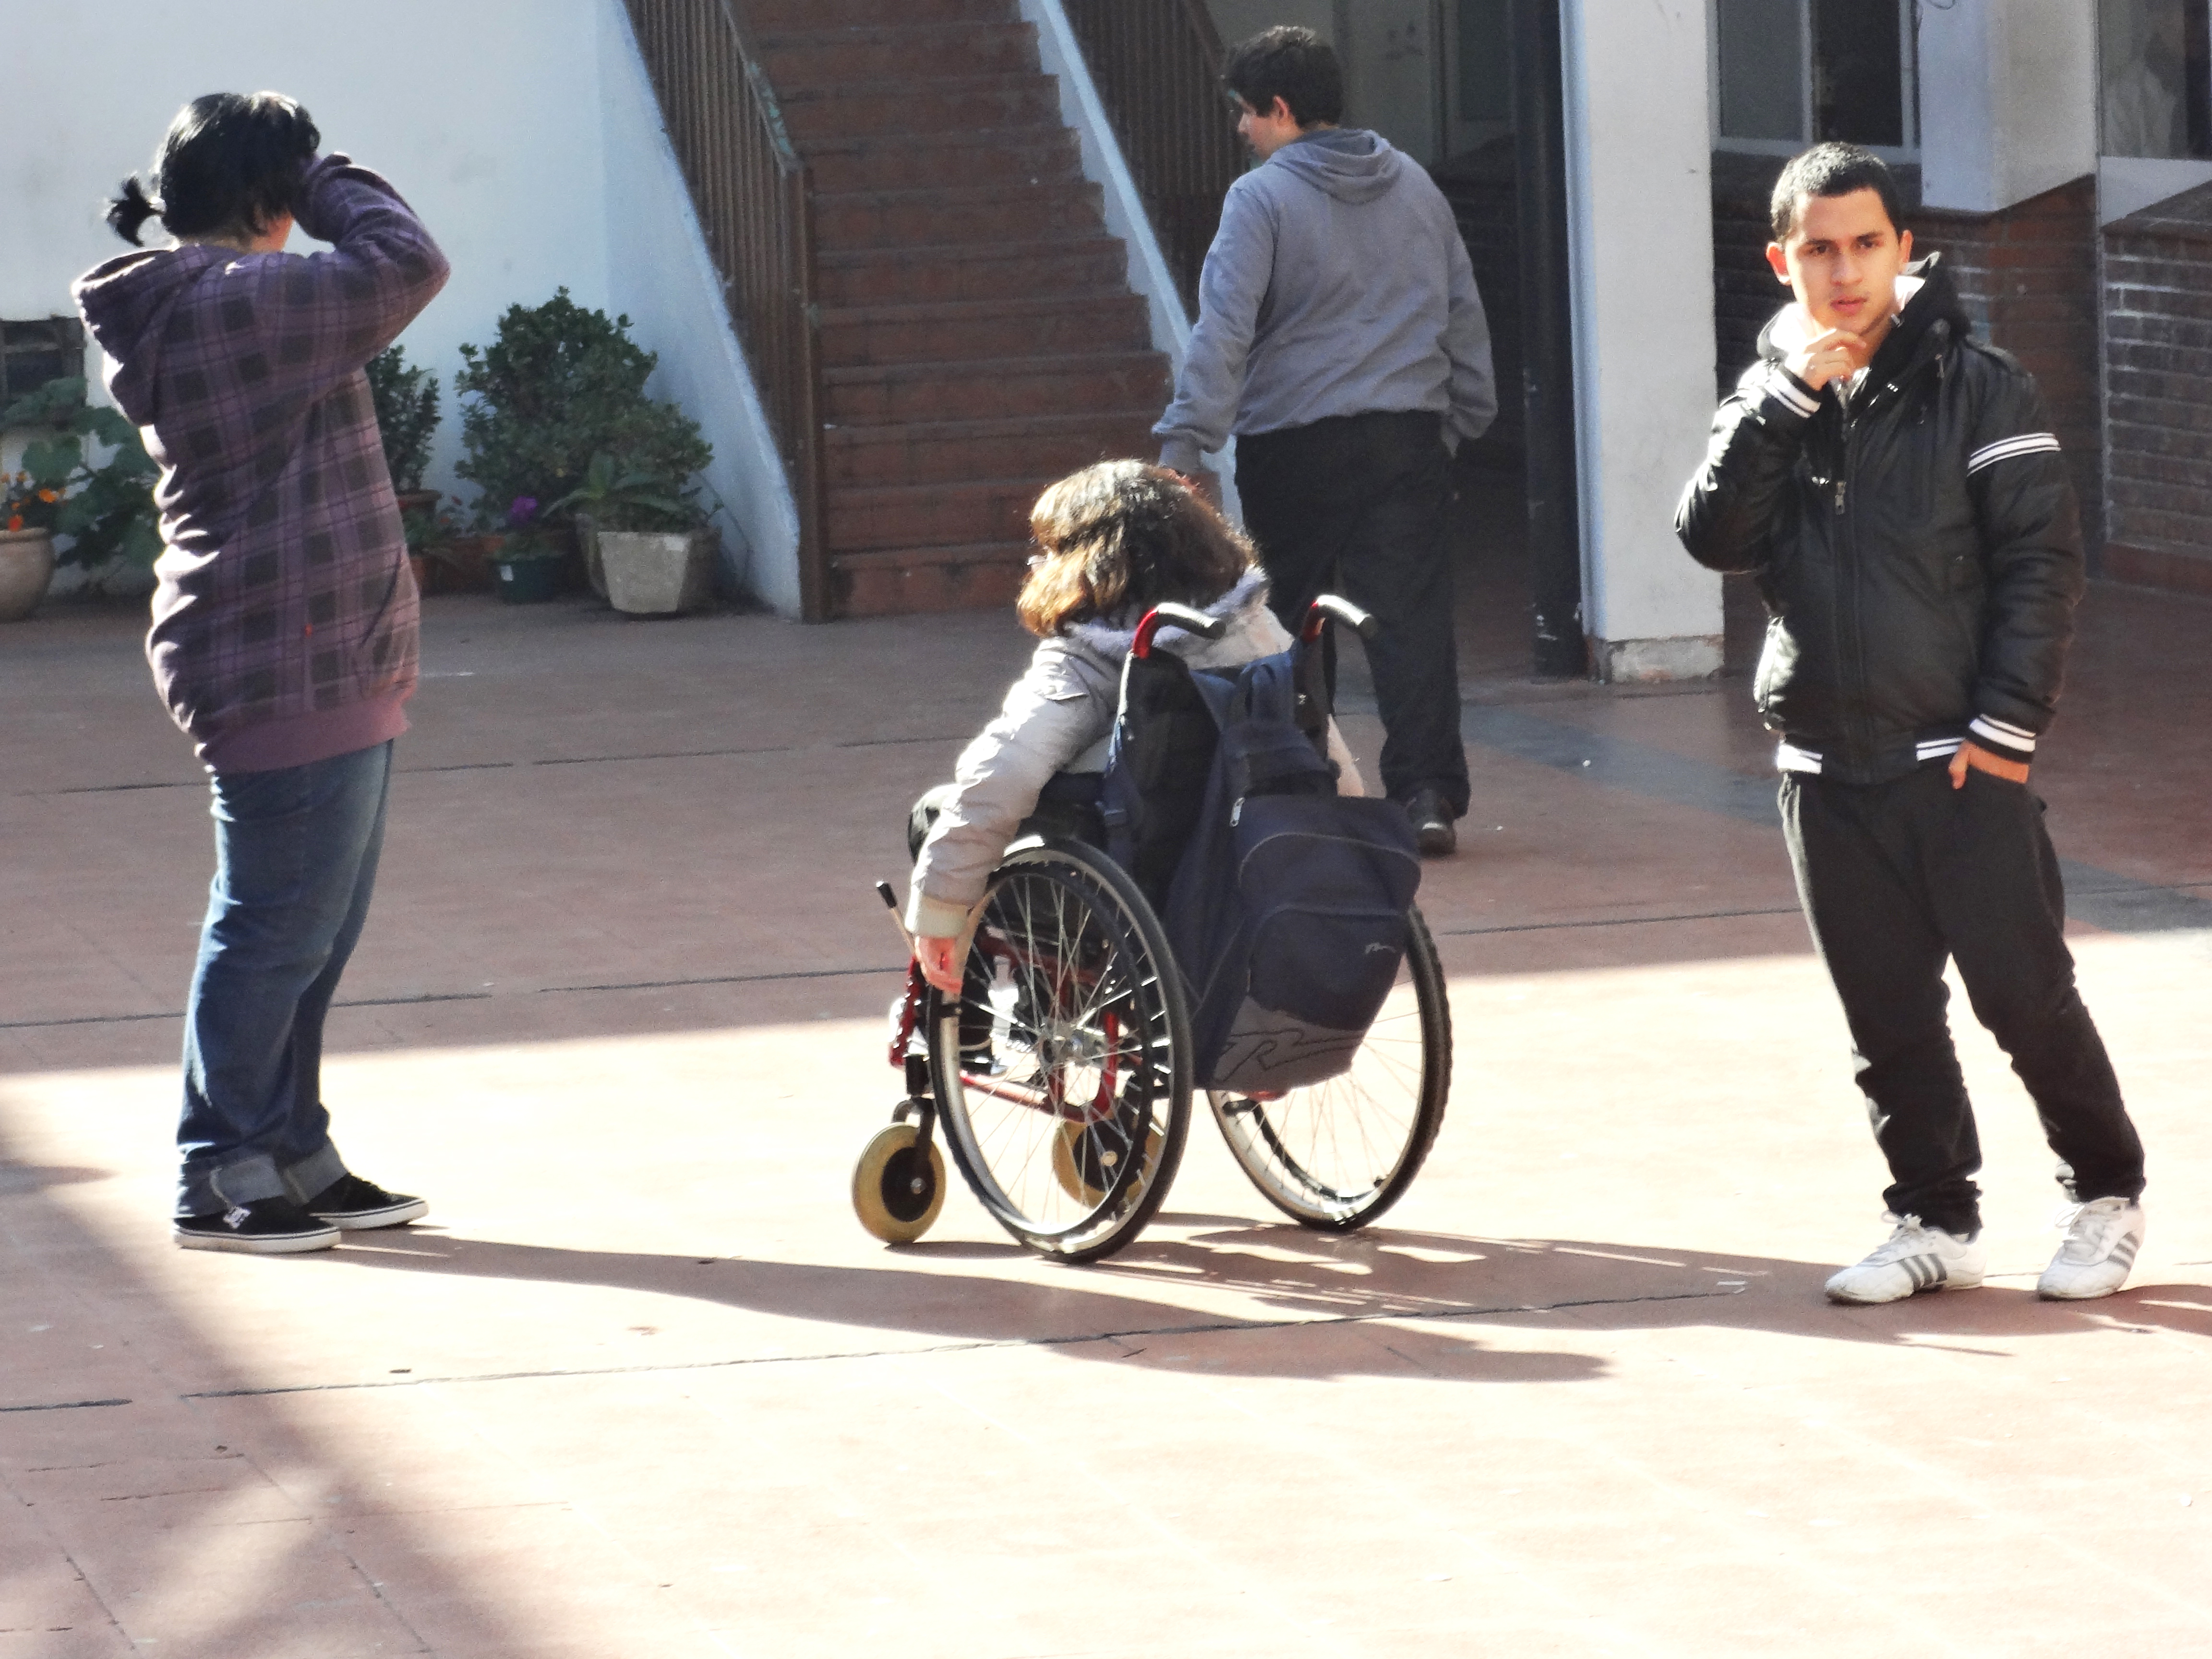 Menina em cadeira de rodas se movimenta entre outros jovens sem deficiência no pátio da escola.